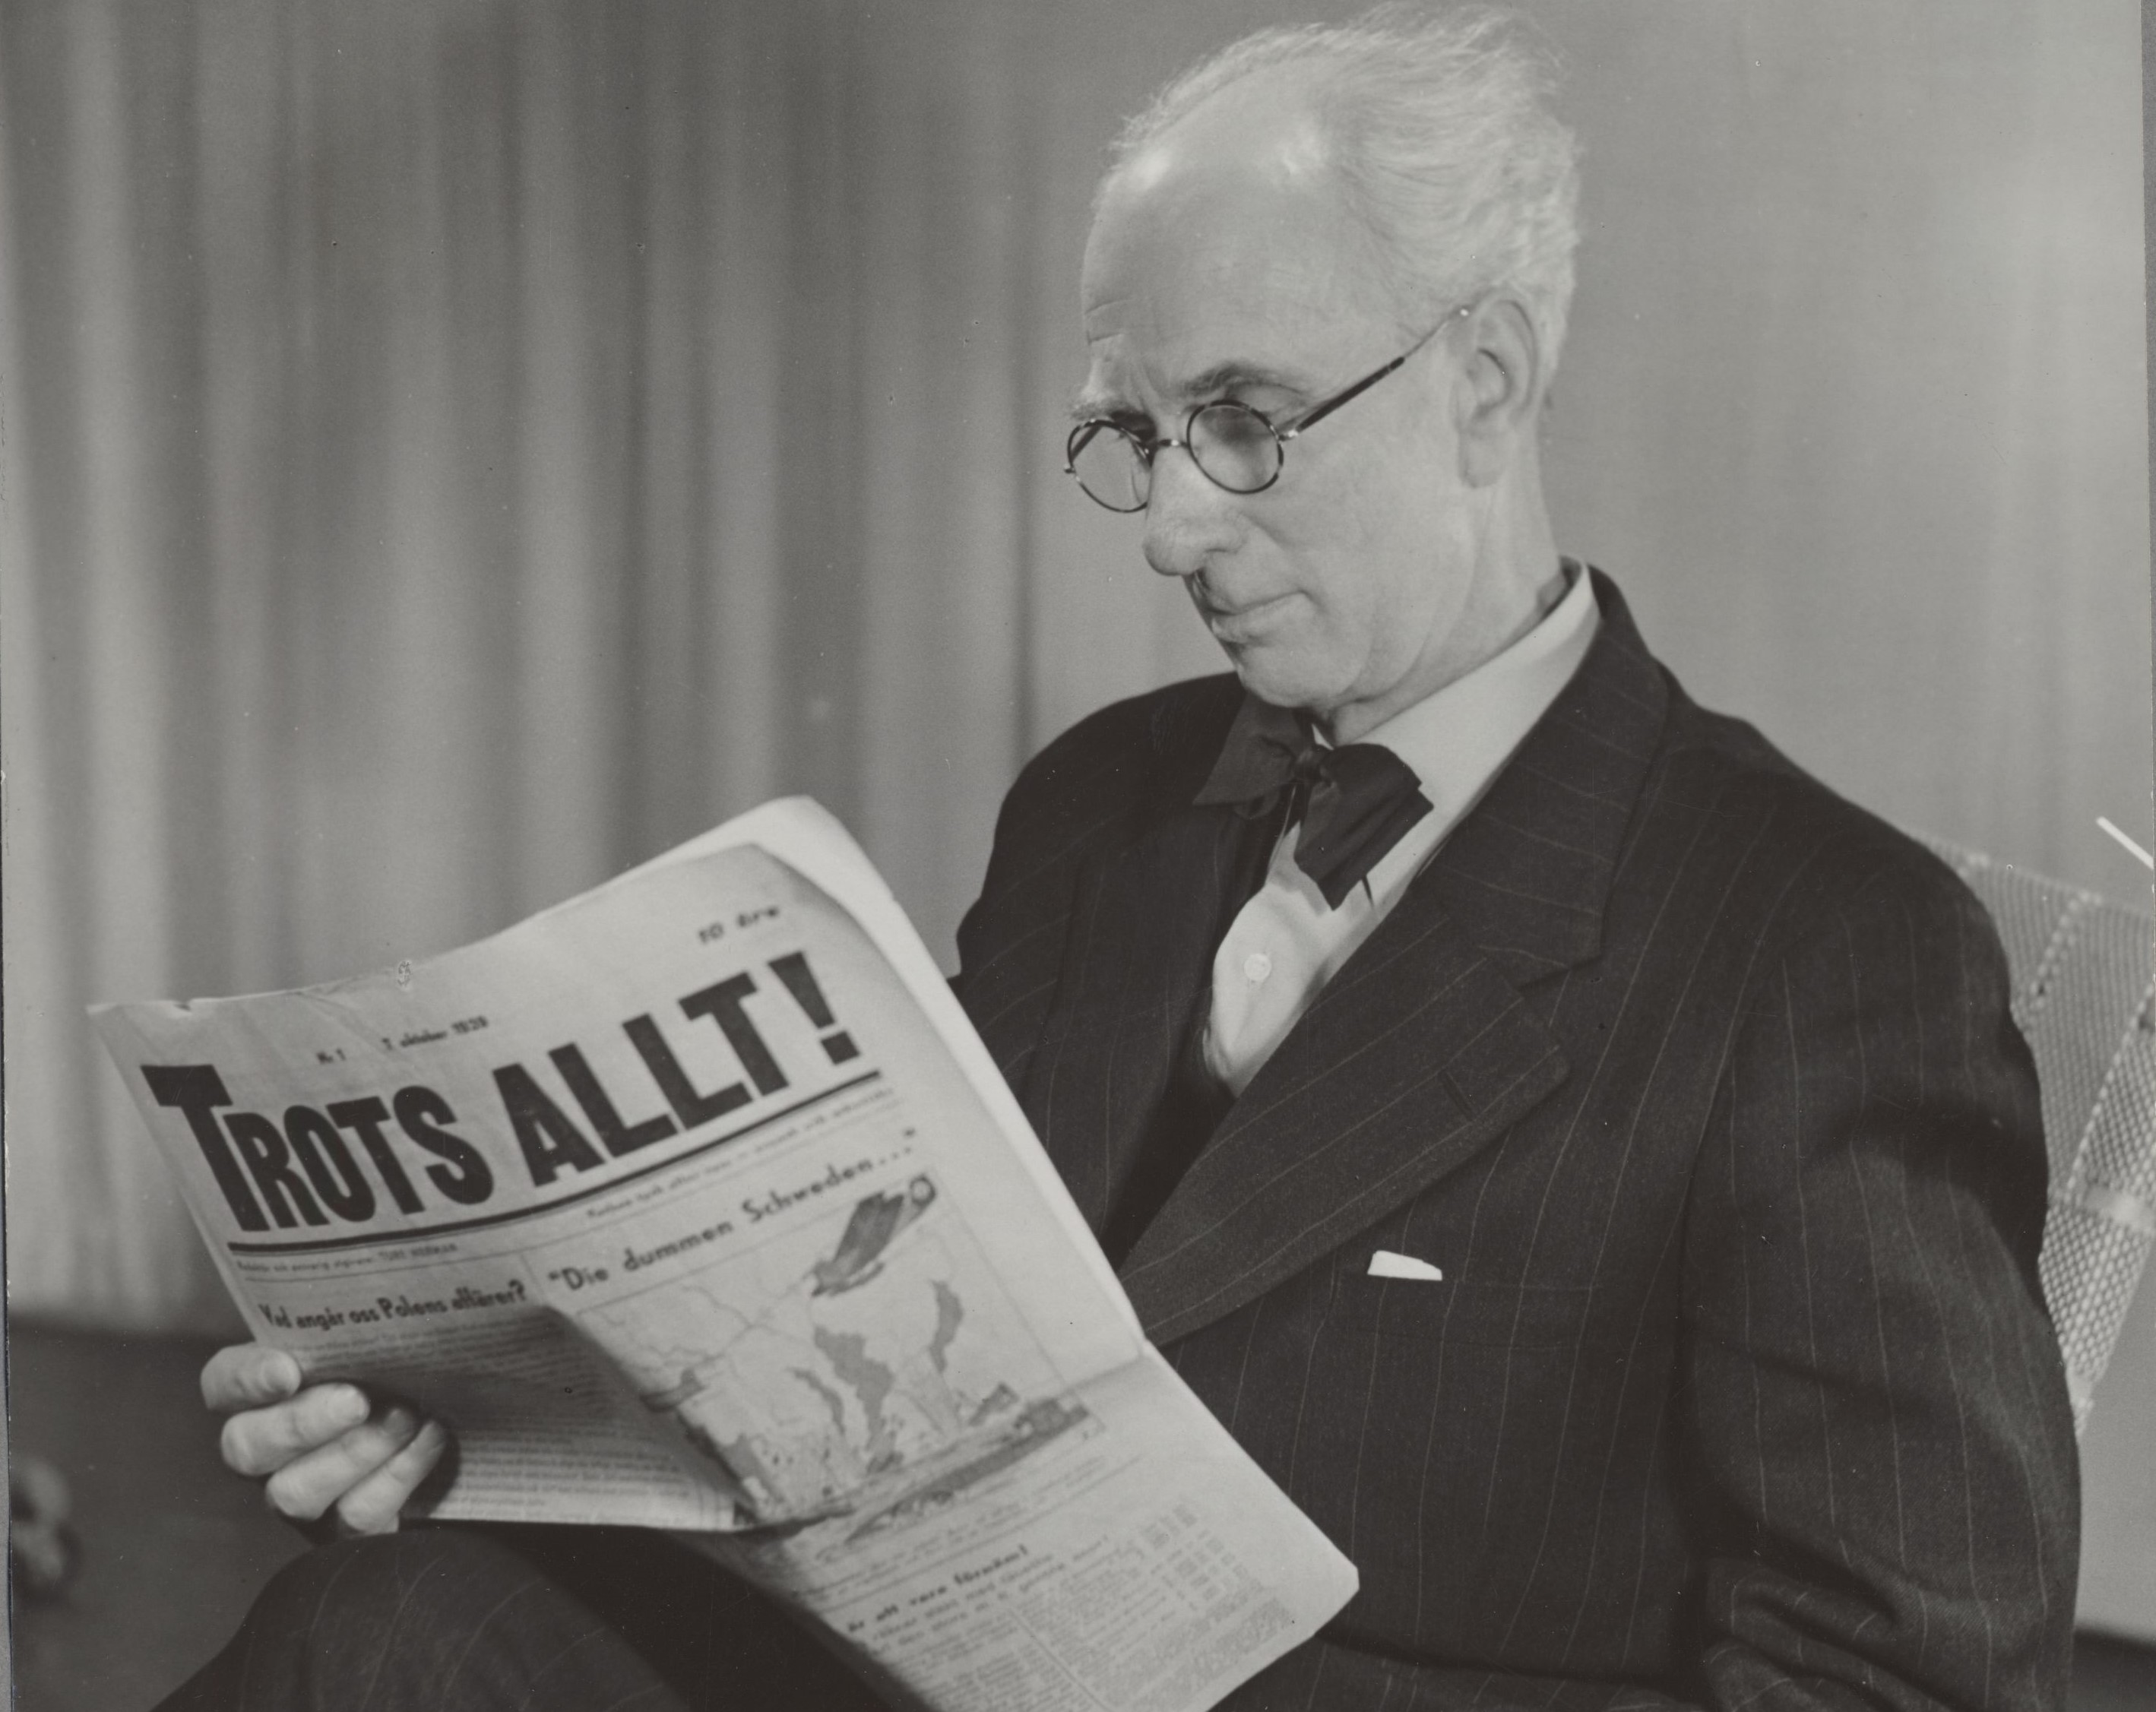 Svartvitt fotografi av en man med vitt hår och runda glasögon klädd i kostym som läser i en öppen tidning, på framsidan syns titeln "Trots allt"